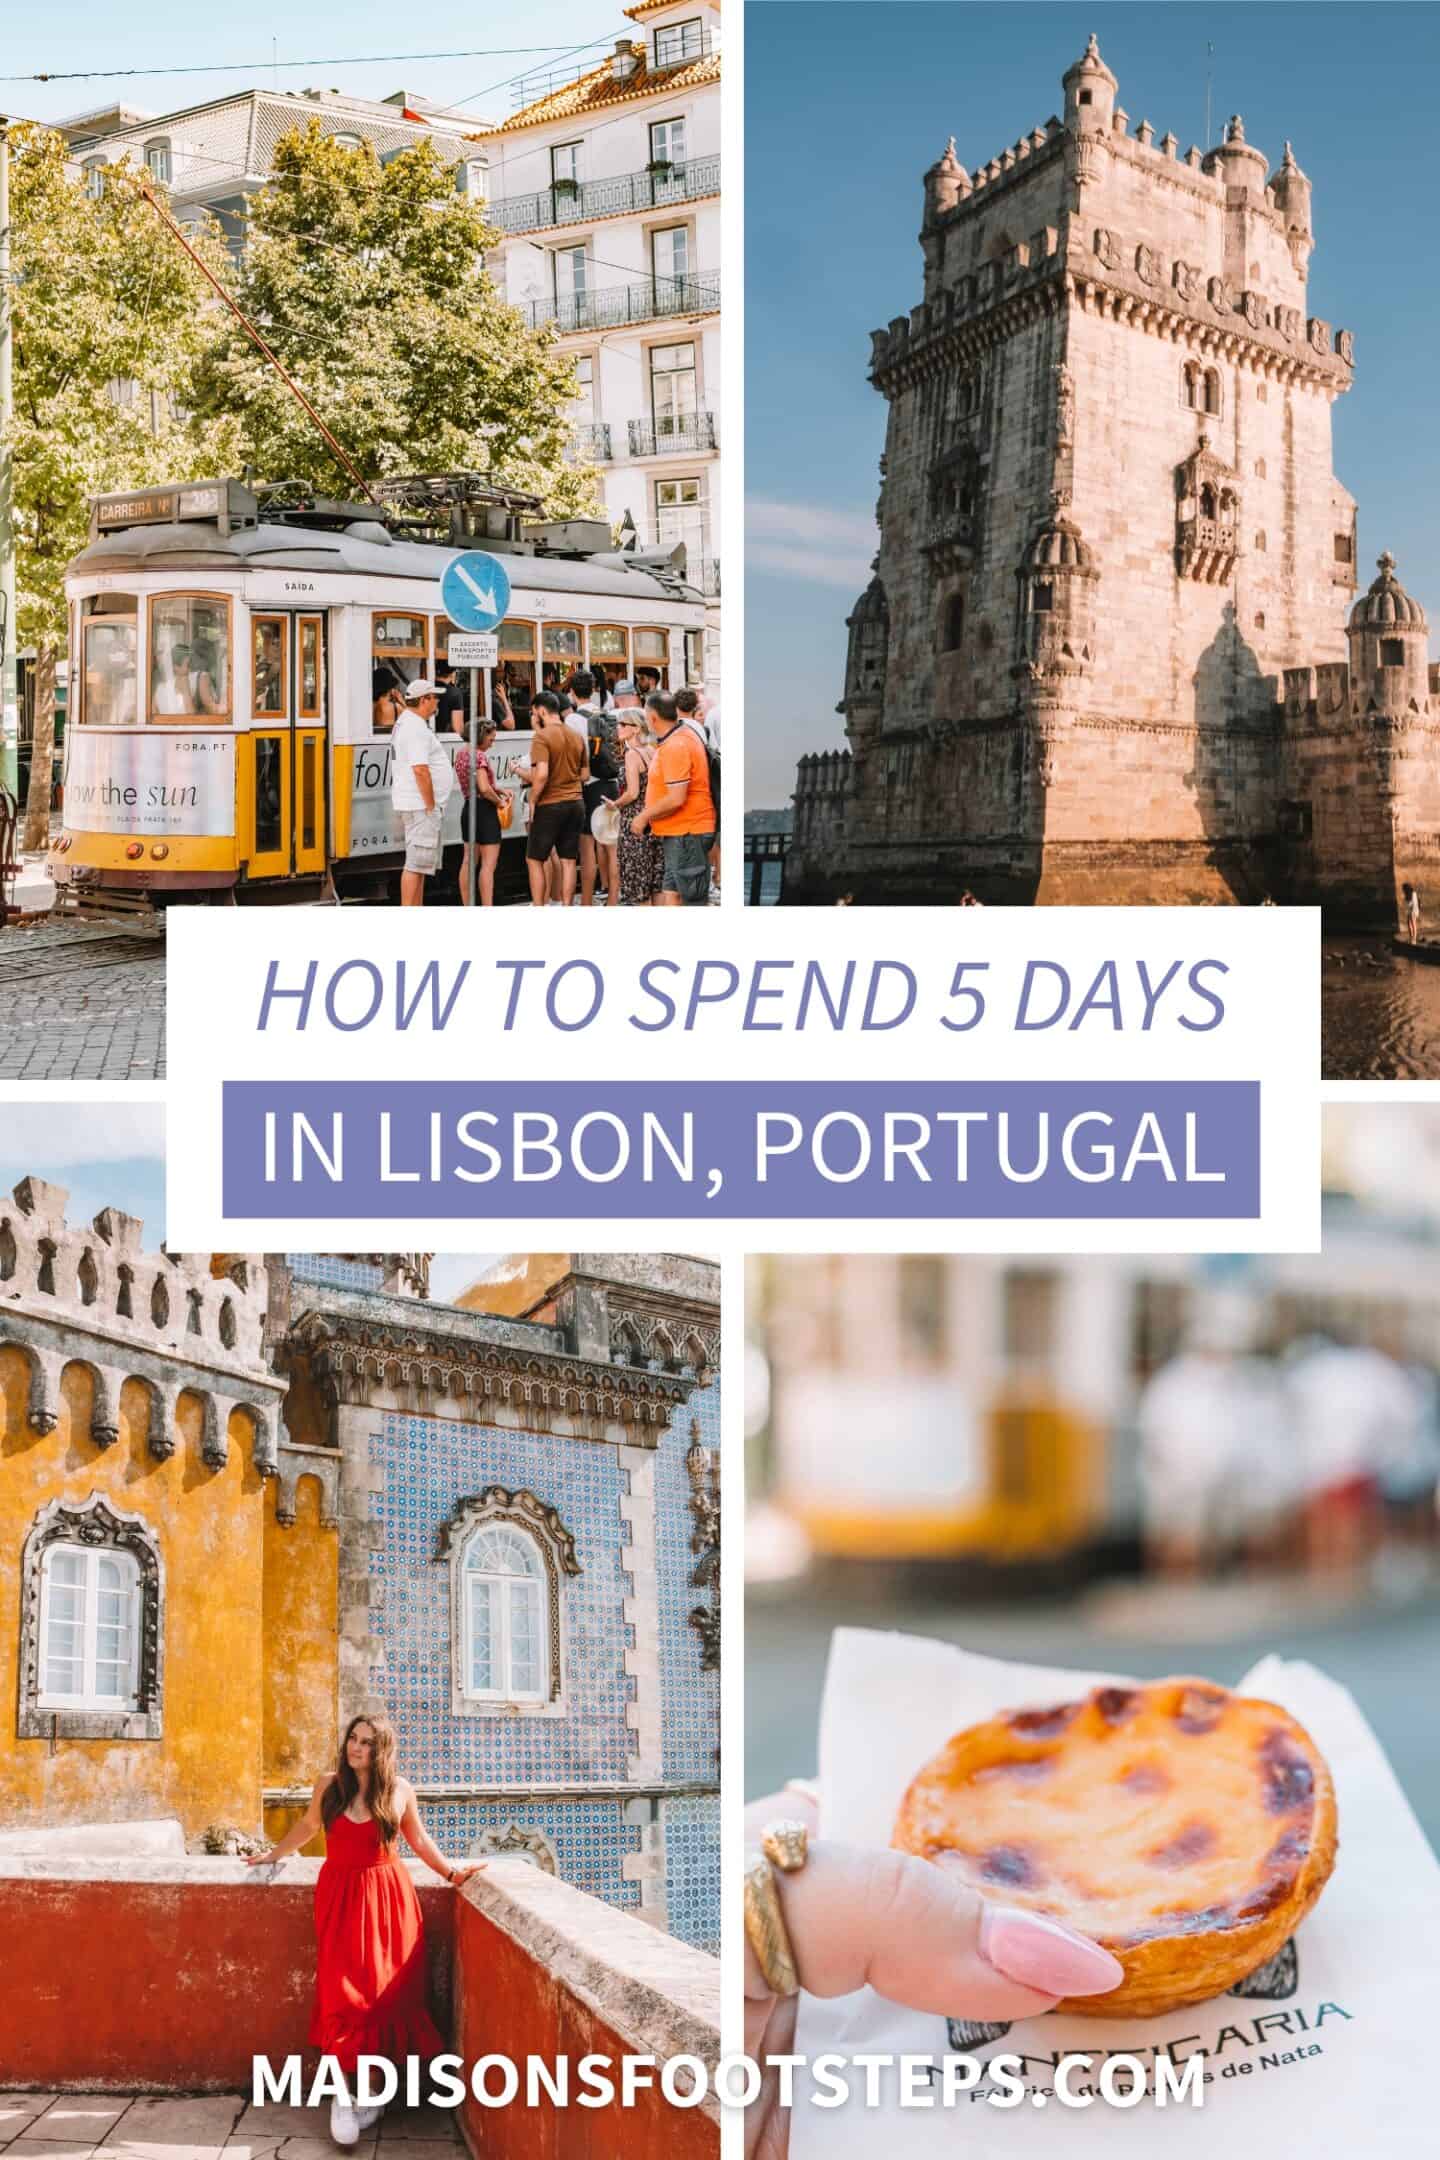 Pinterest pin for 5 days in Lisbon blog post.